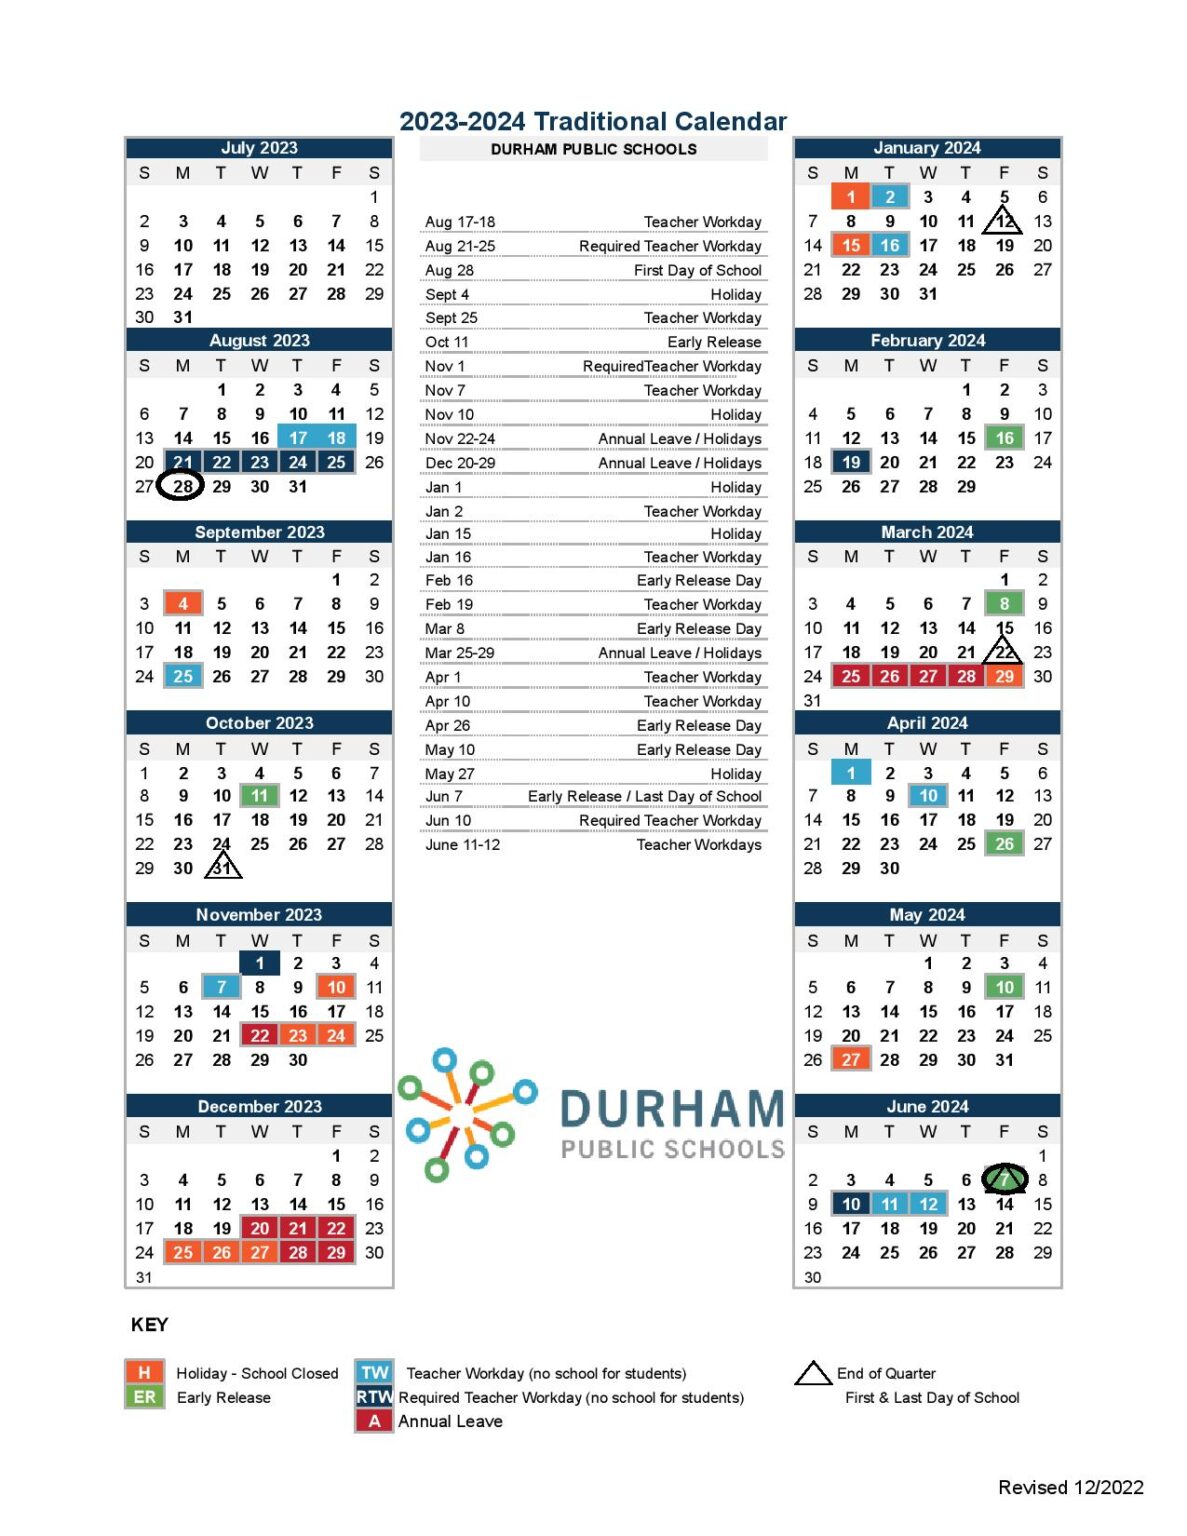 Durham Public Schools 2025 2026 Calendar